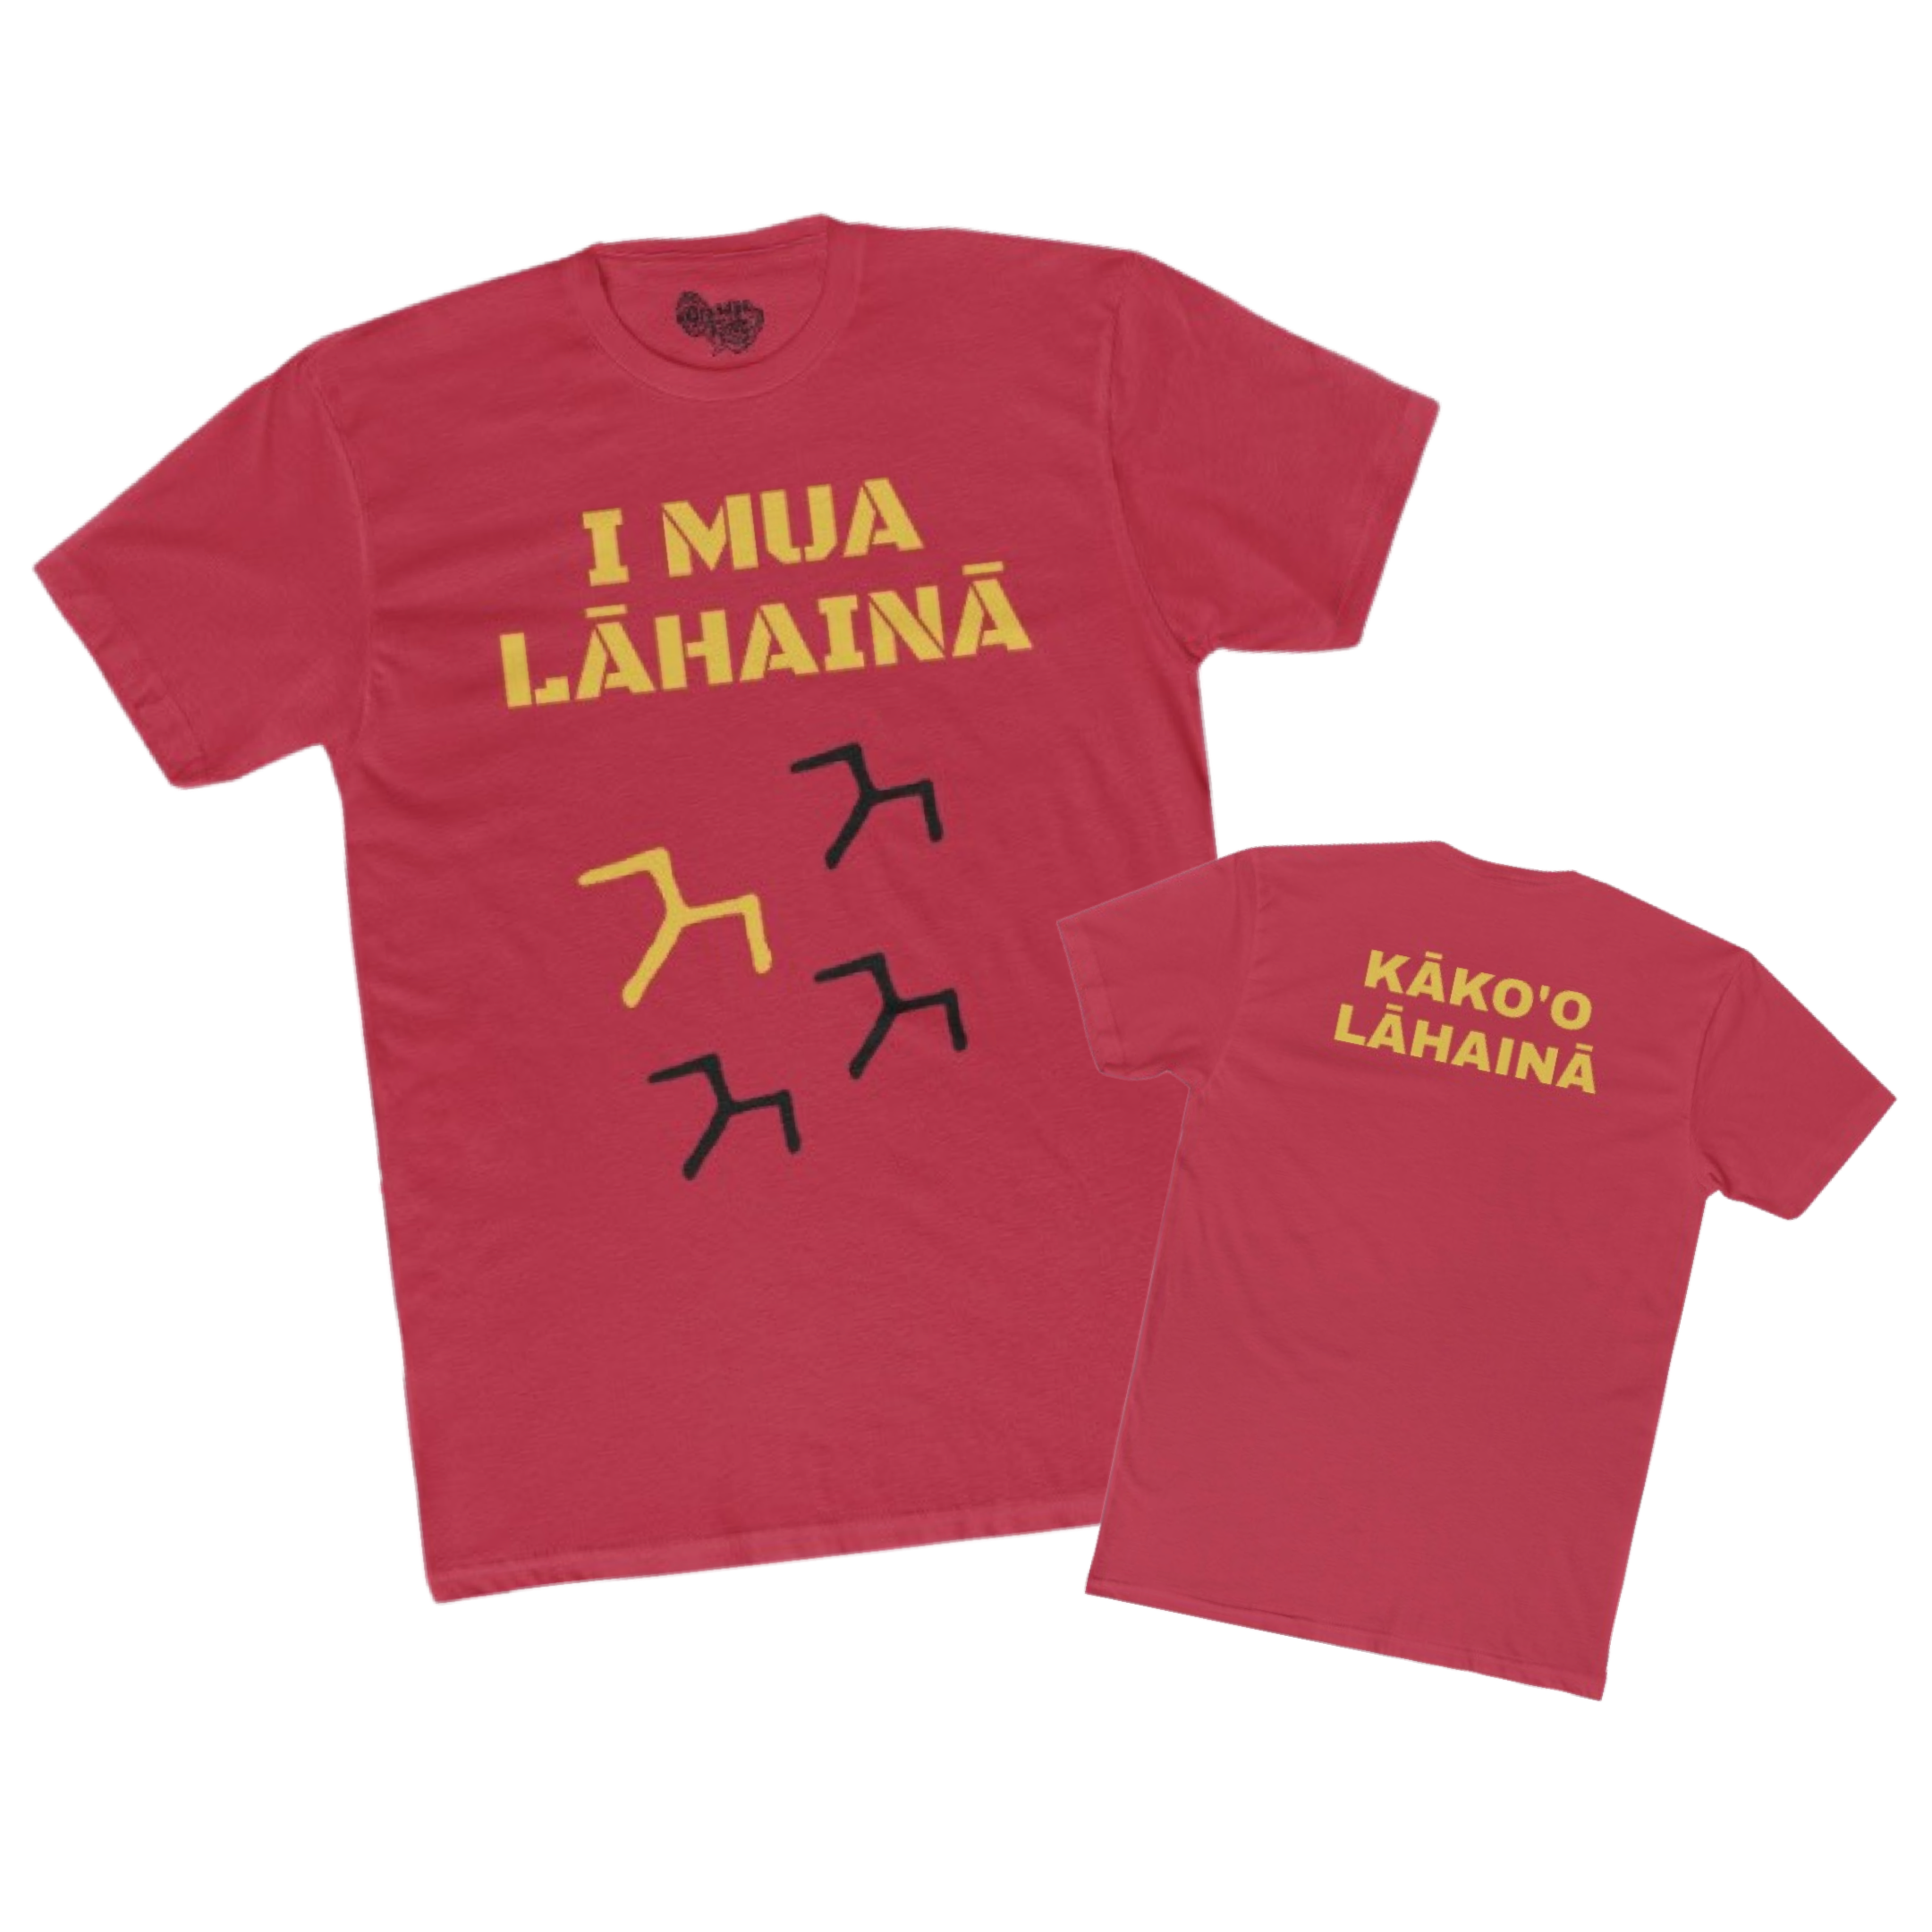 I MUA LĀHAINĀ - 'Iwa Birds - Men's T-Shirt - Lāhainā Fundraiser